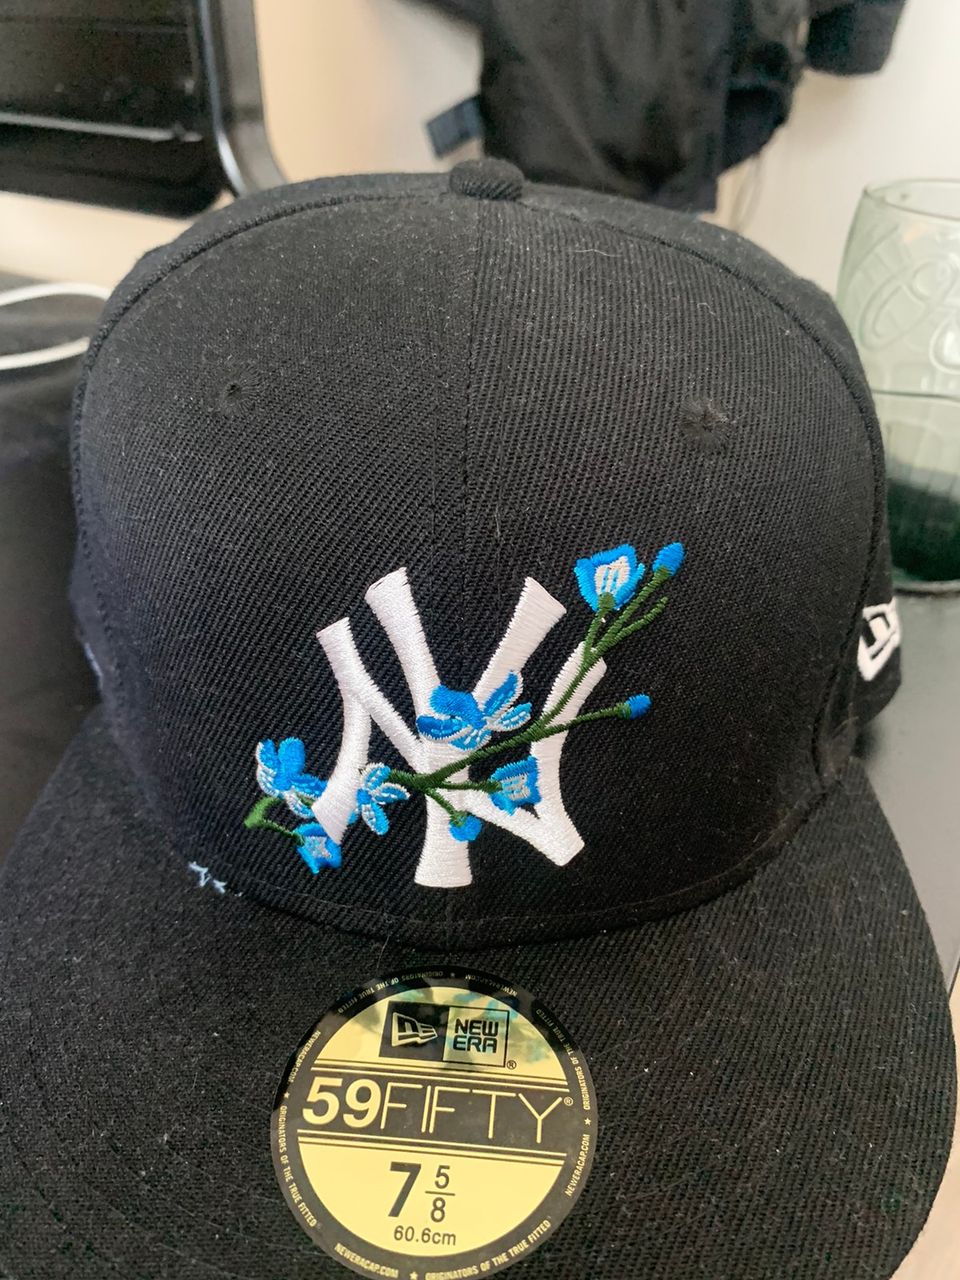 NY New Era fitted cap. 7 5/8